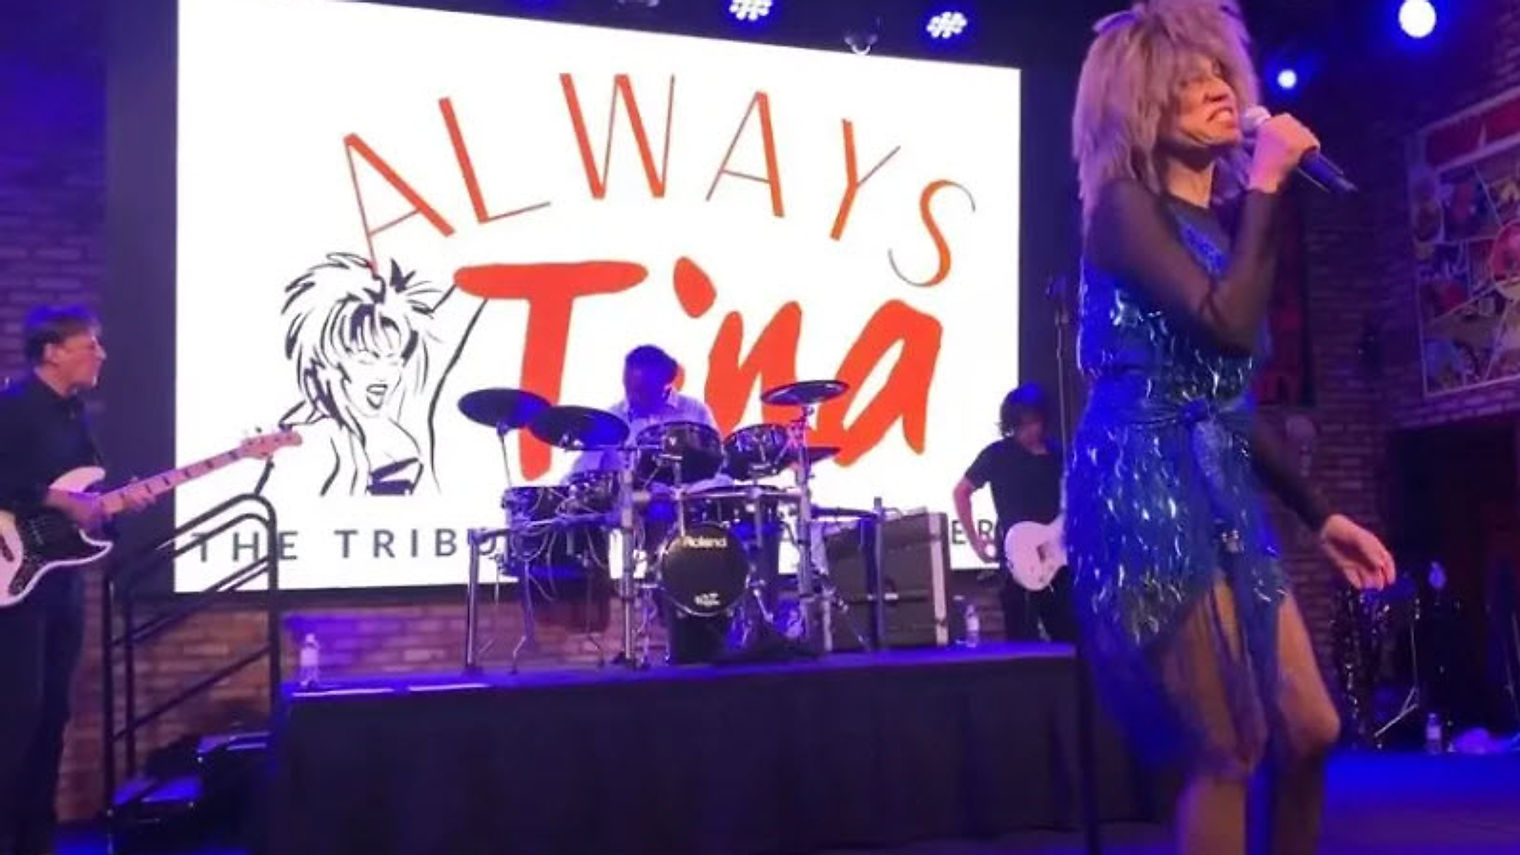 Always Tina-Shar Wils as Tina Turner